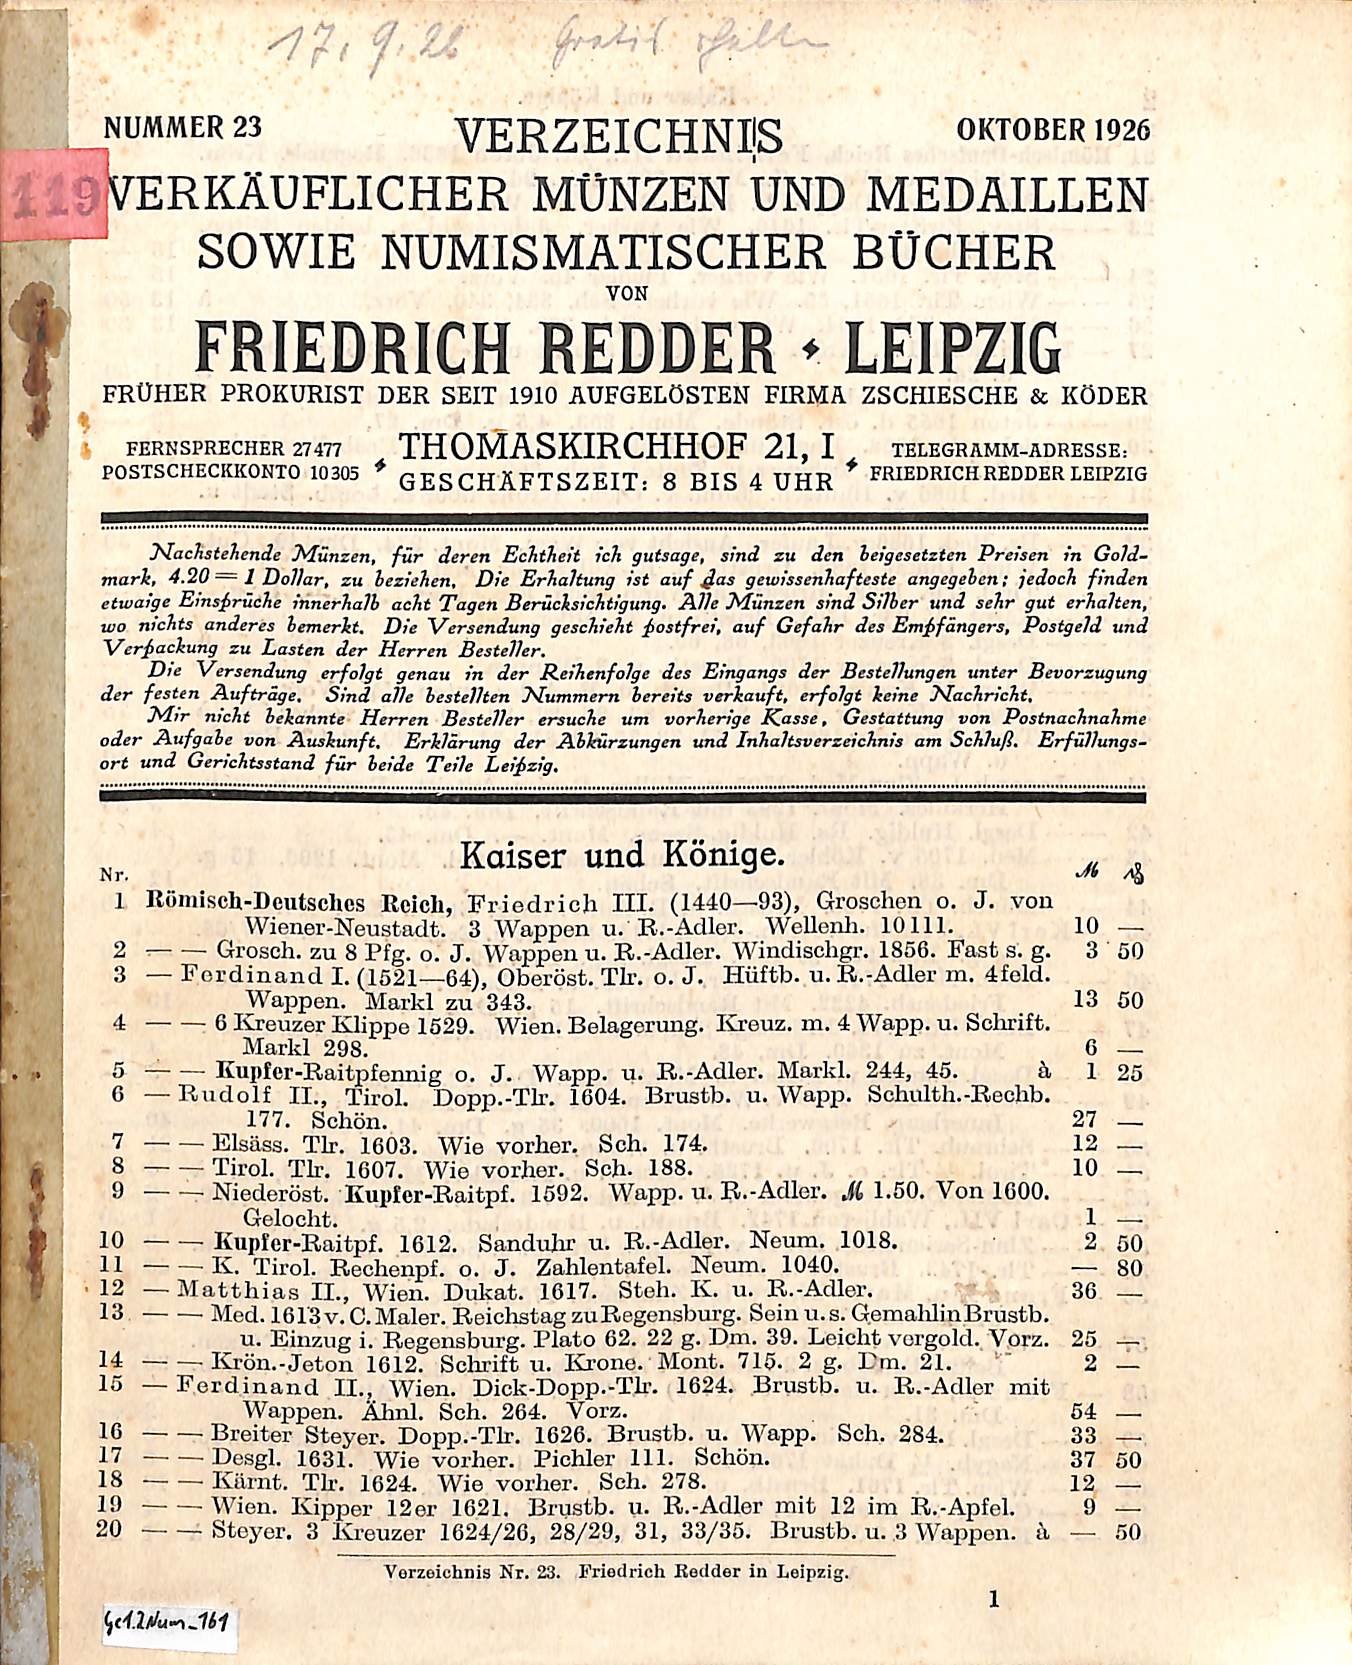 F. Redder, Verzeichnis verkäuflicher Münzen, Medaillen und Bücher Nr. 23 (HEIMATWELTEN Zwönitz - Raritätensammlung Bruno Gebhardt CC BY-NC-SA)